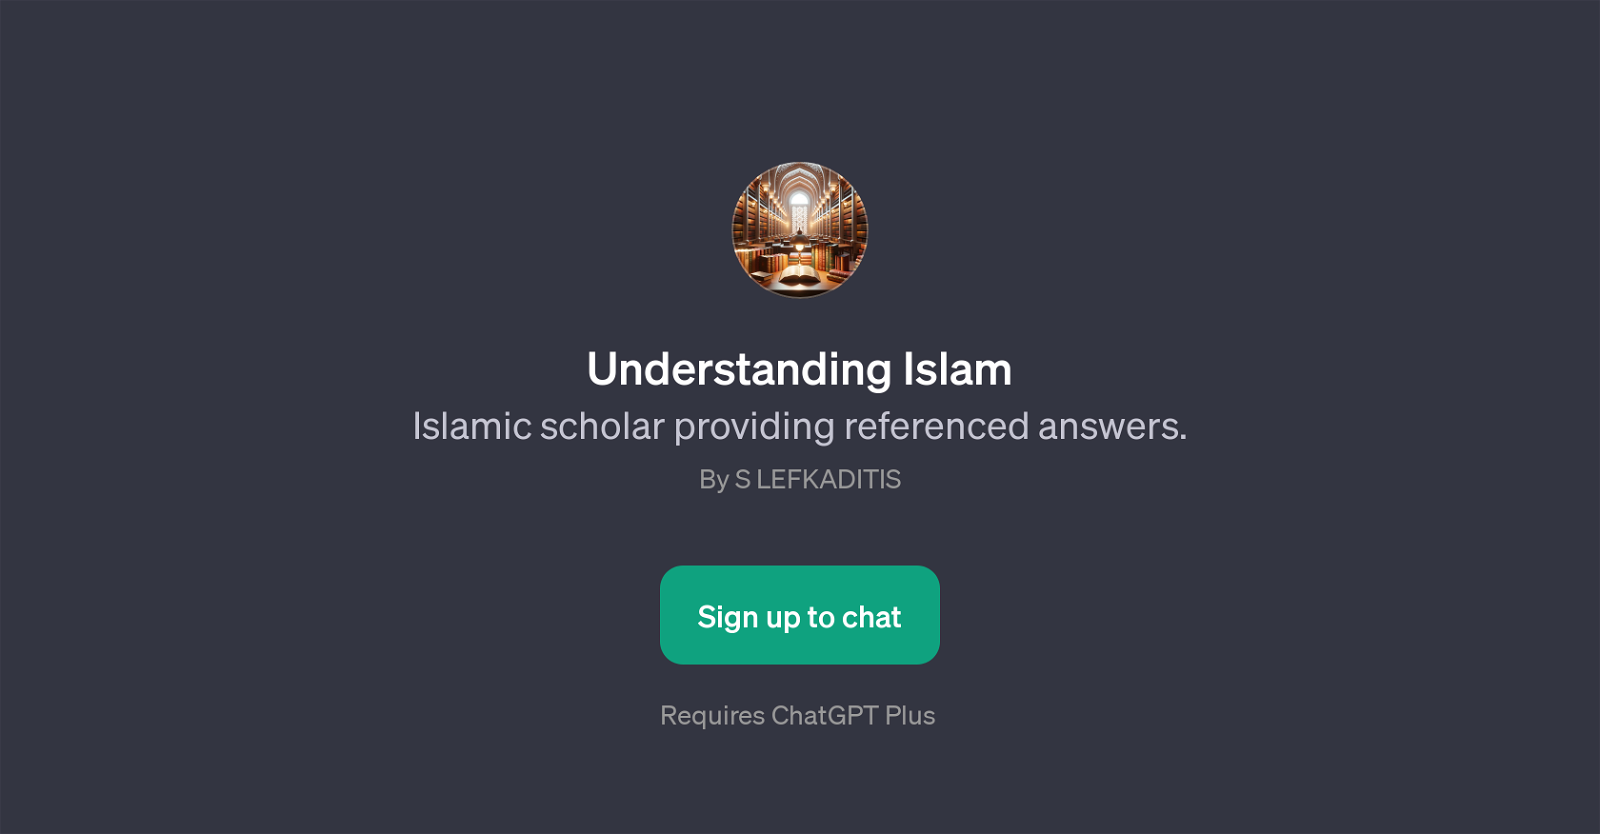 Understanding Islam website